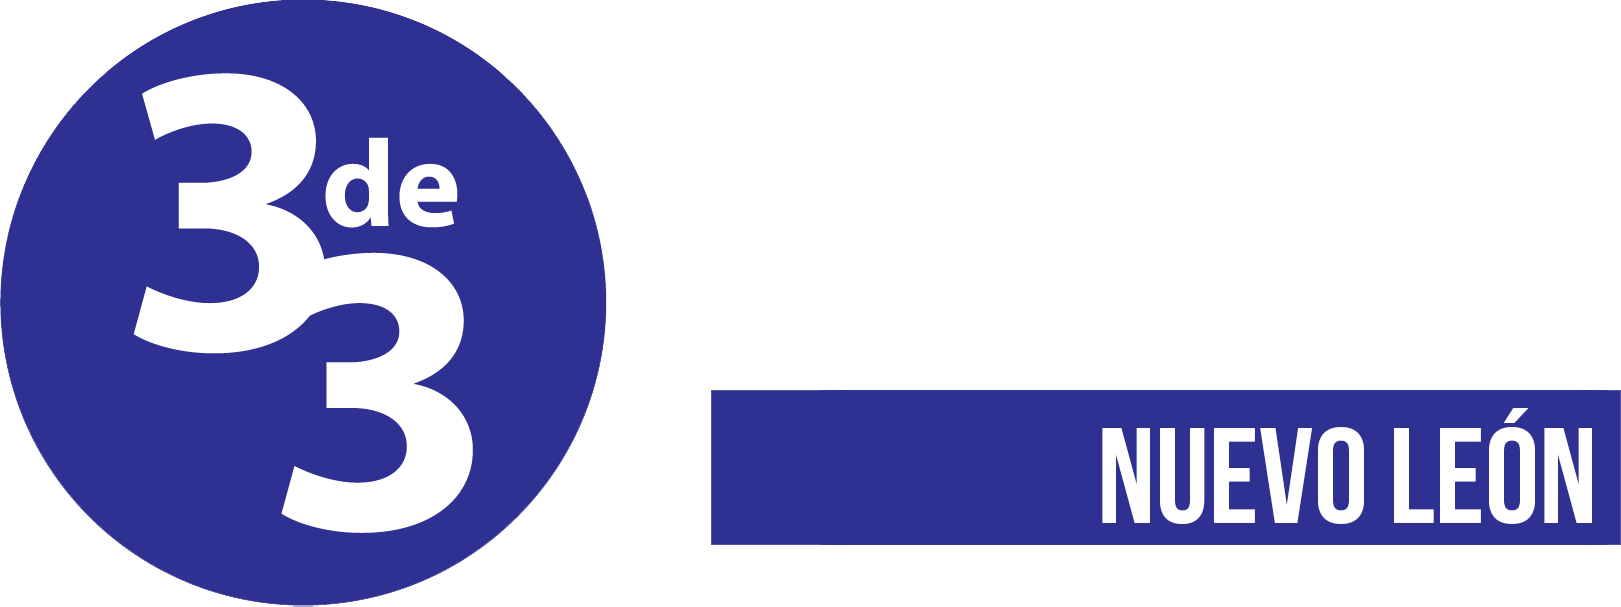 Iniciativa 3 de 3 por la integridad - Nuevo León